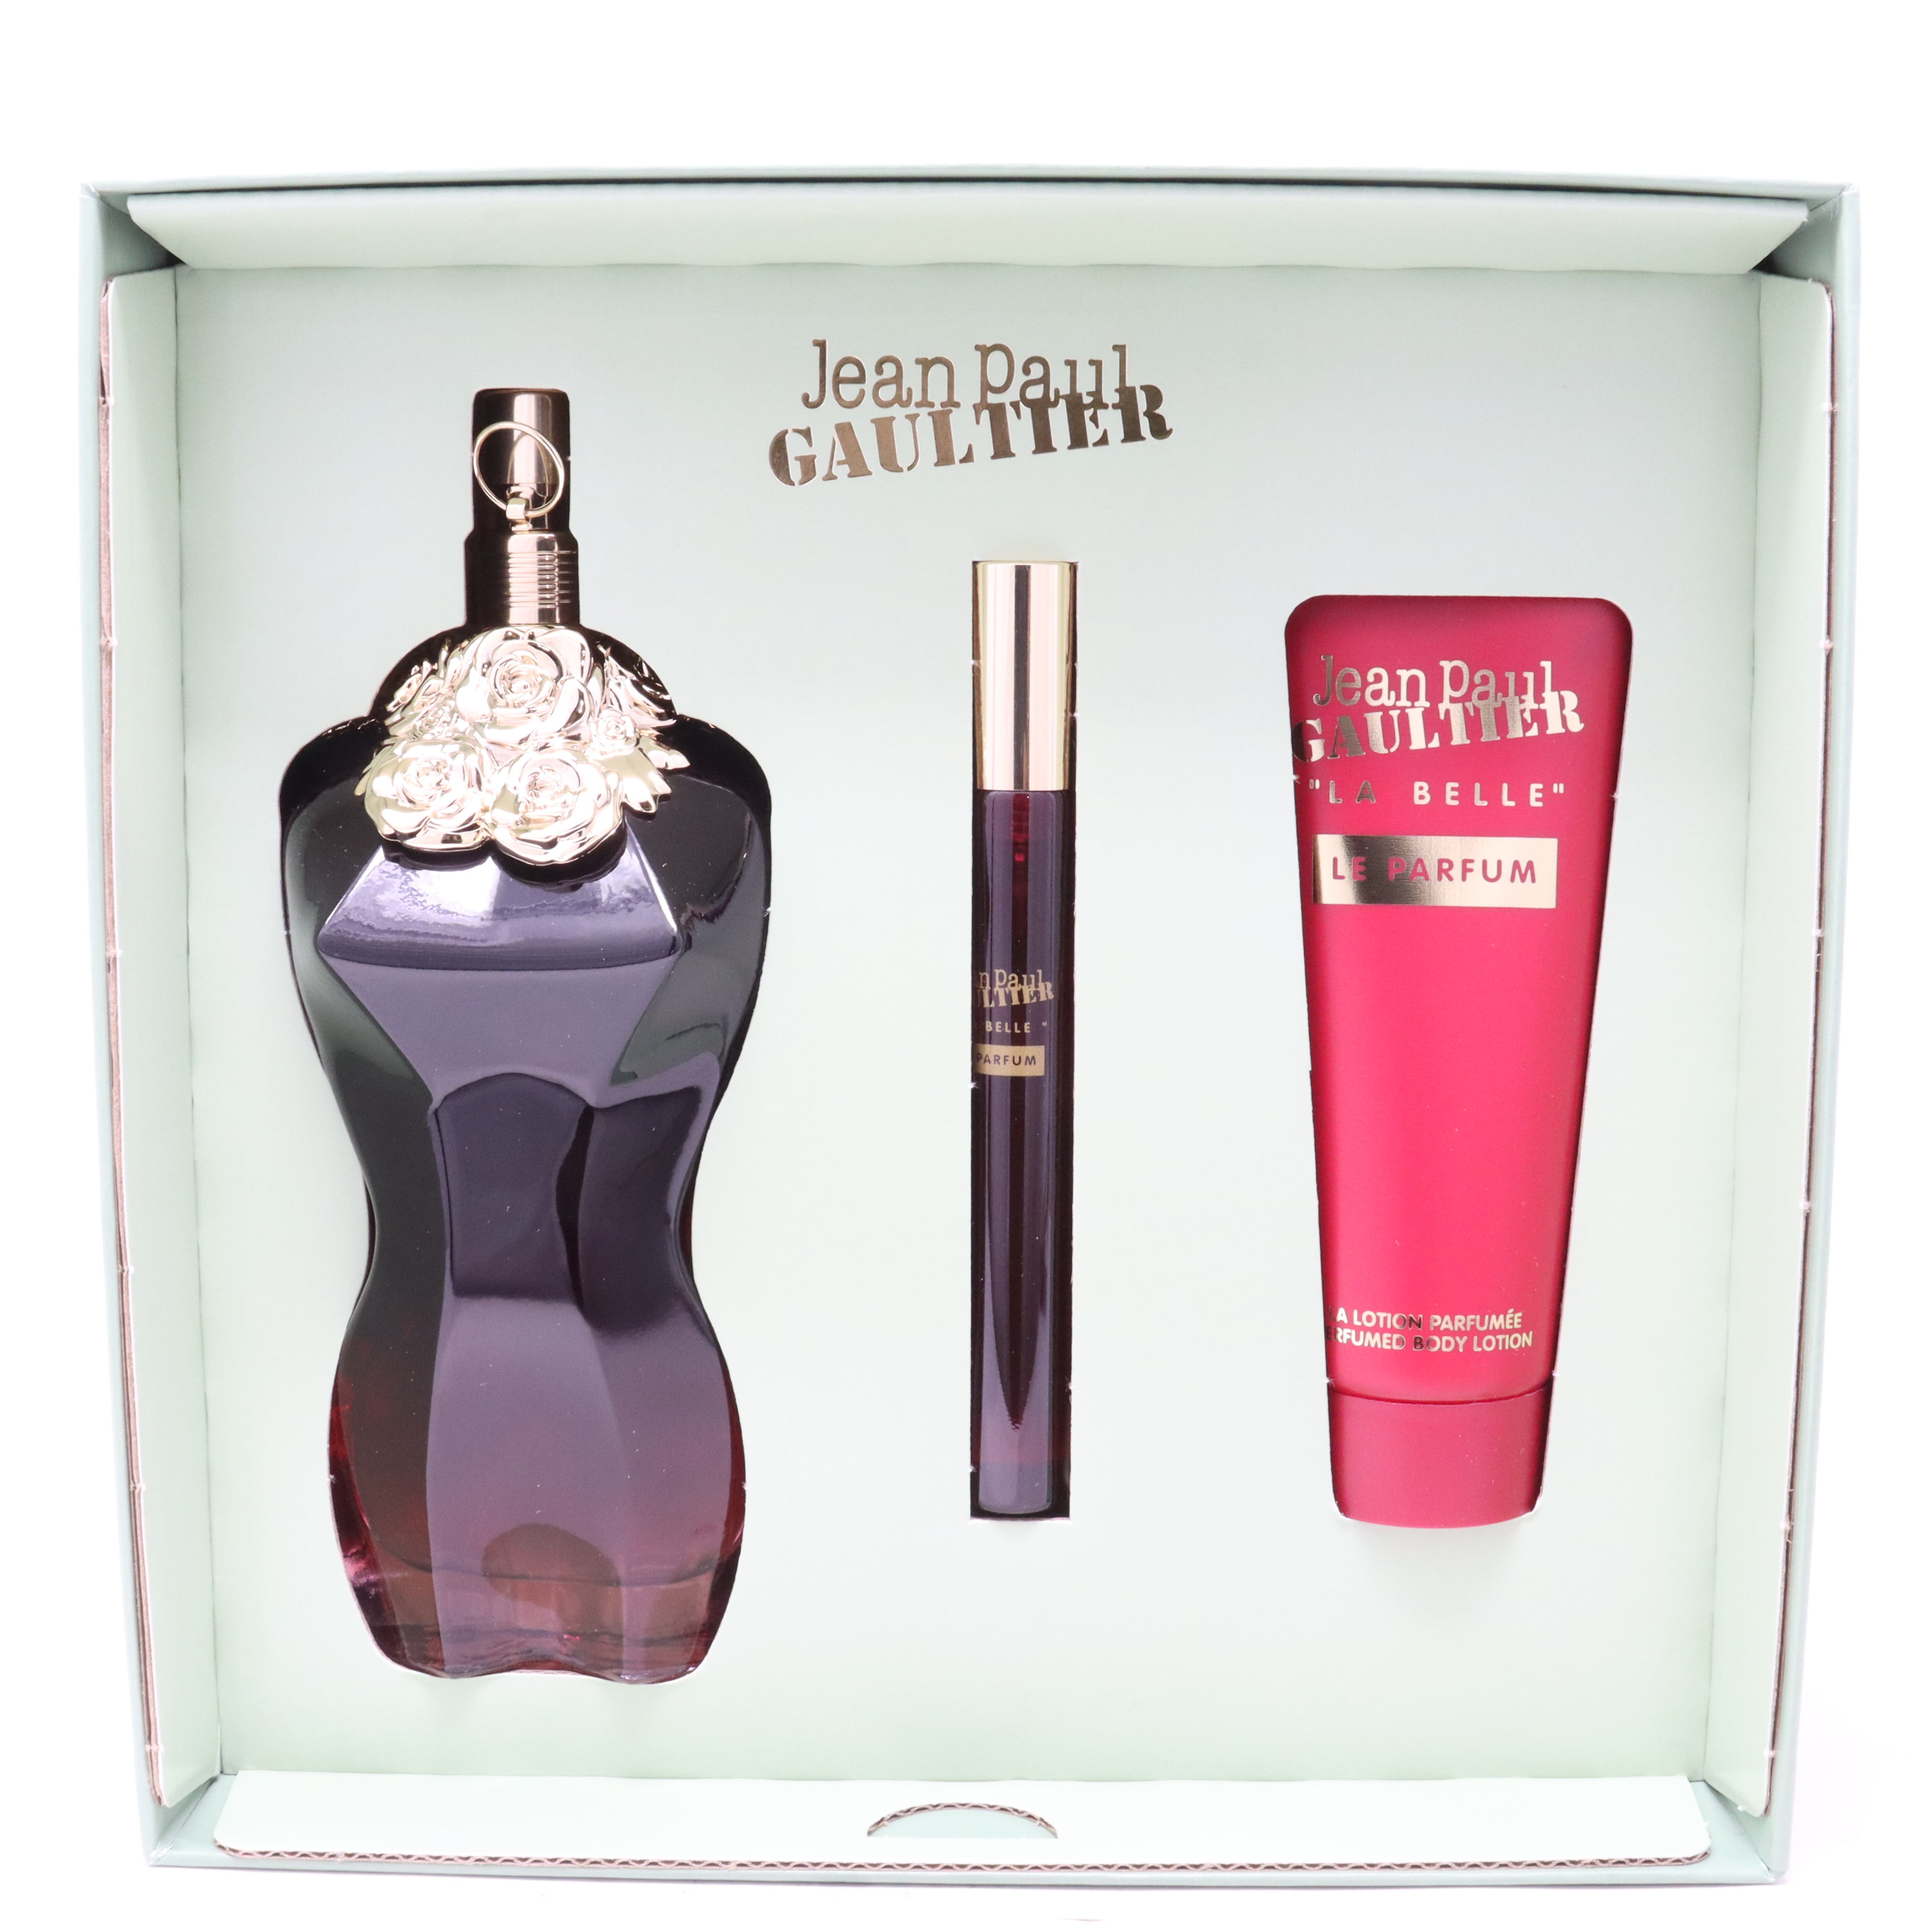 Jean Paul Gaultier La Belle Eau De Parfum 3-Pcs Gift Set / New With Box